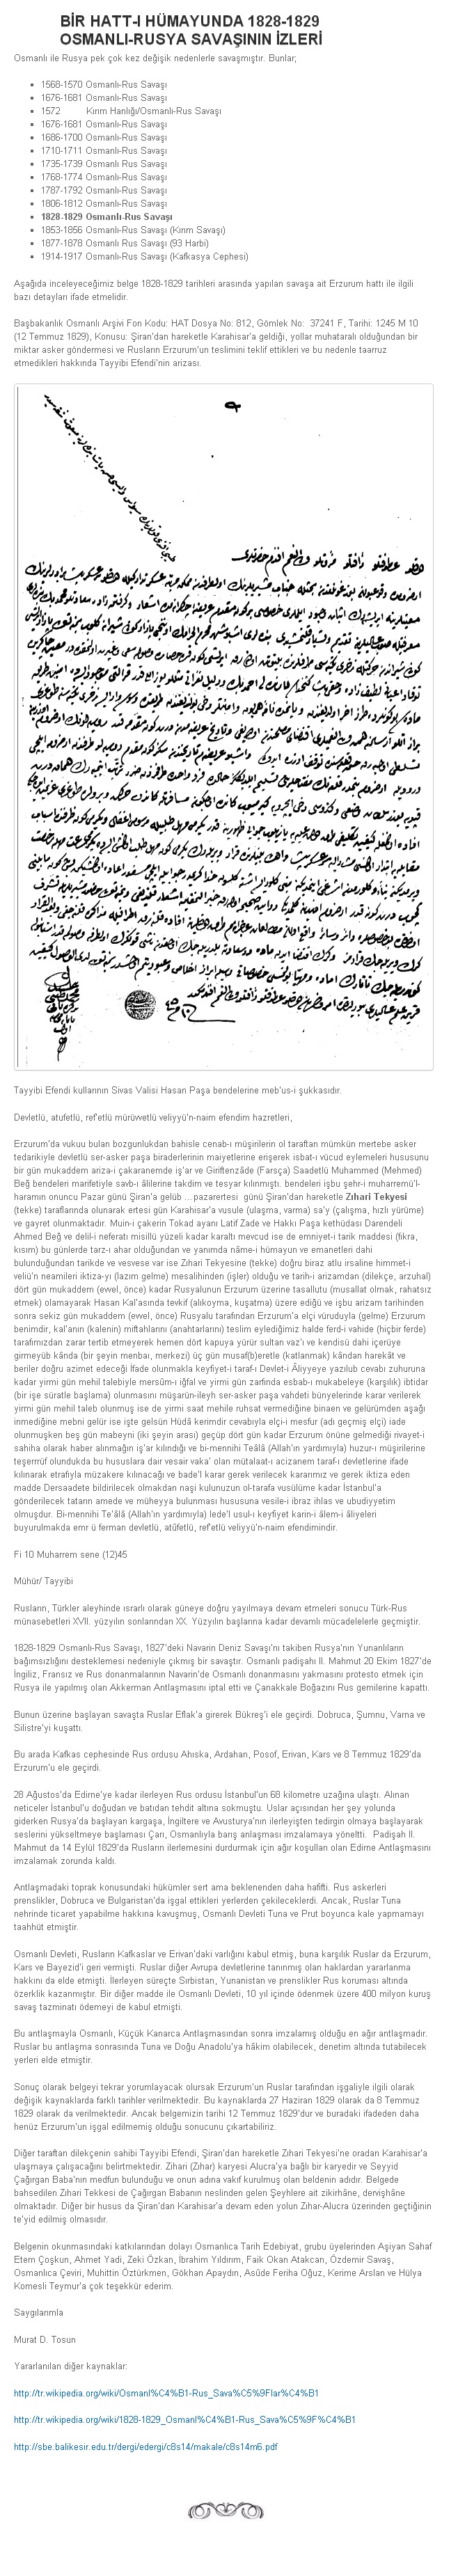 Russo Turkish War Of 1828 29 Wikidata